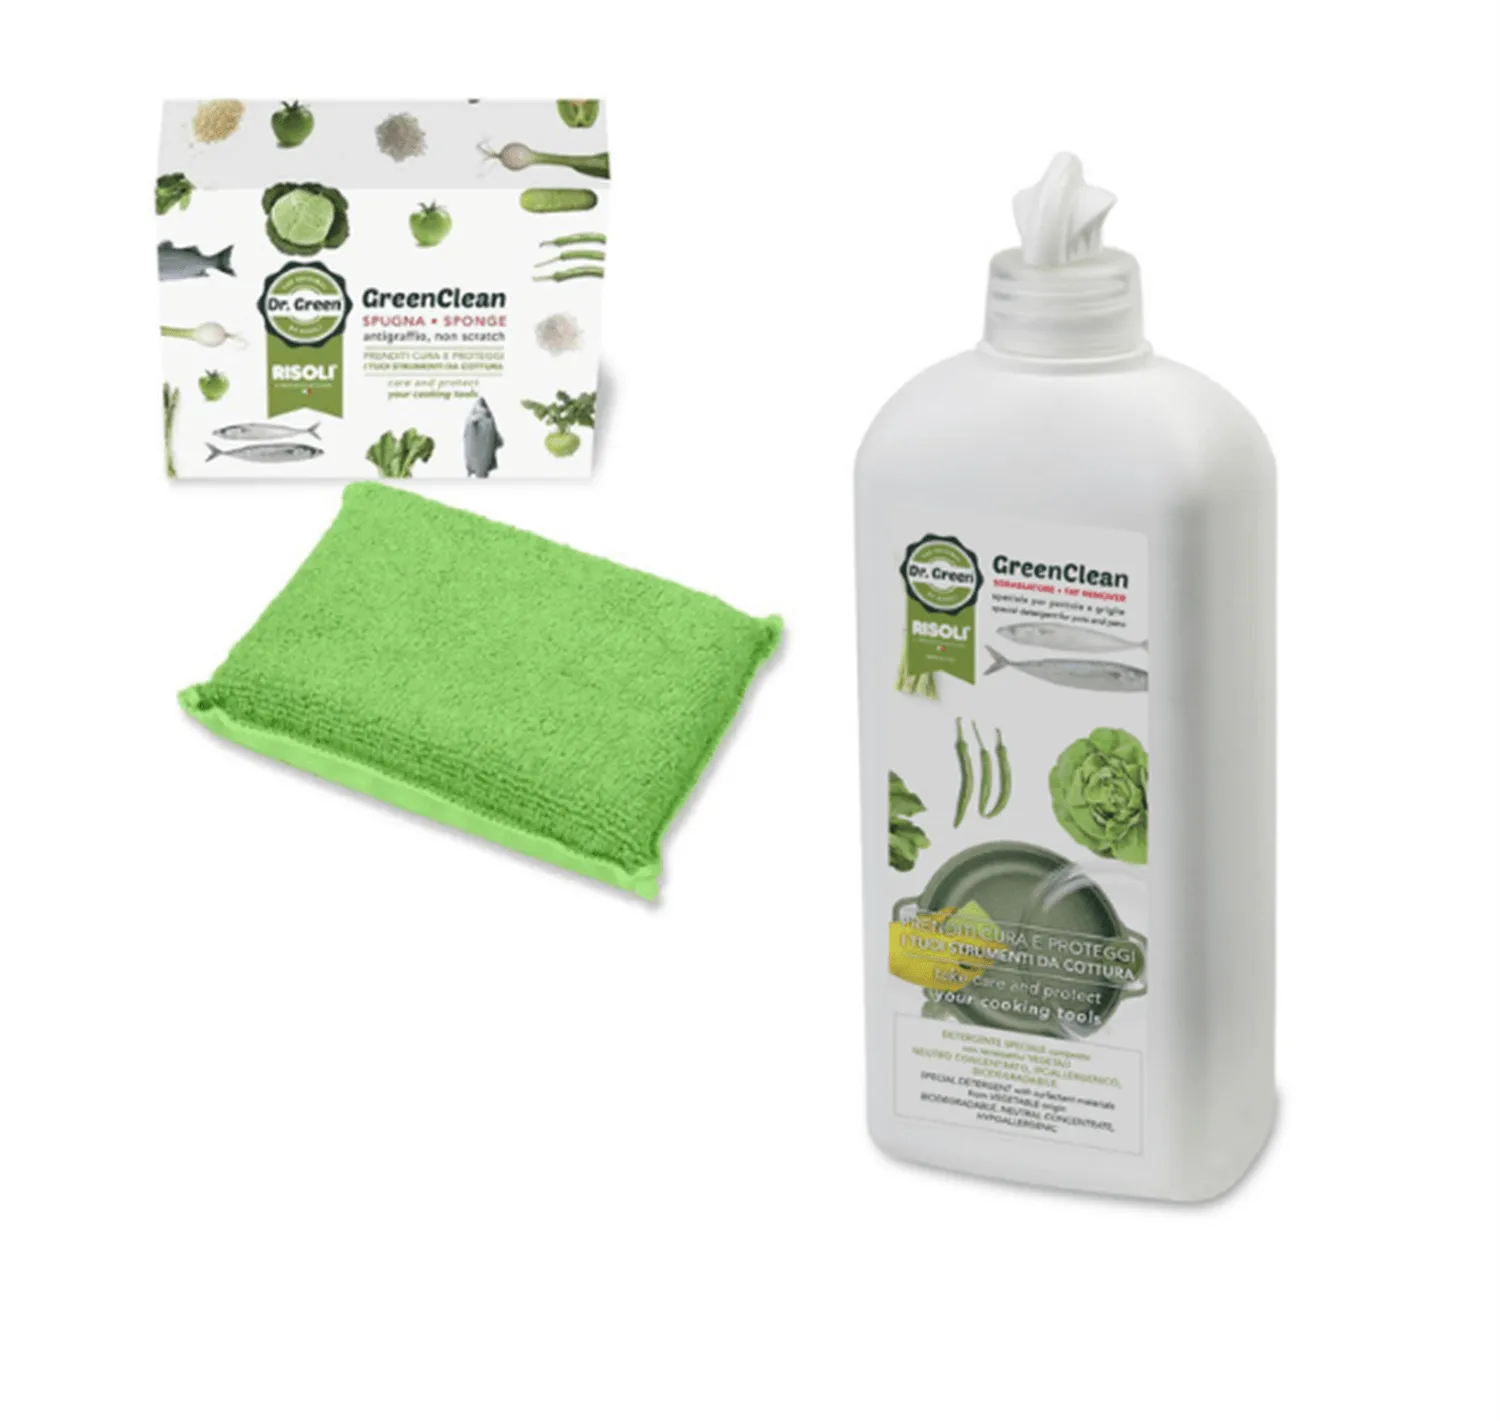 Spugna Green Clean e Detergente Green Clean, di Risolì